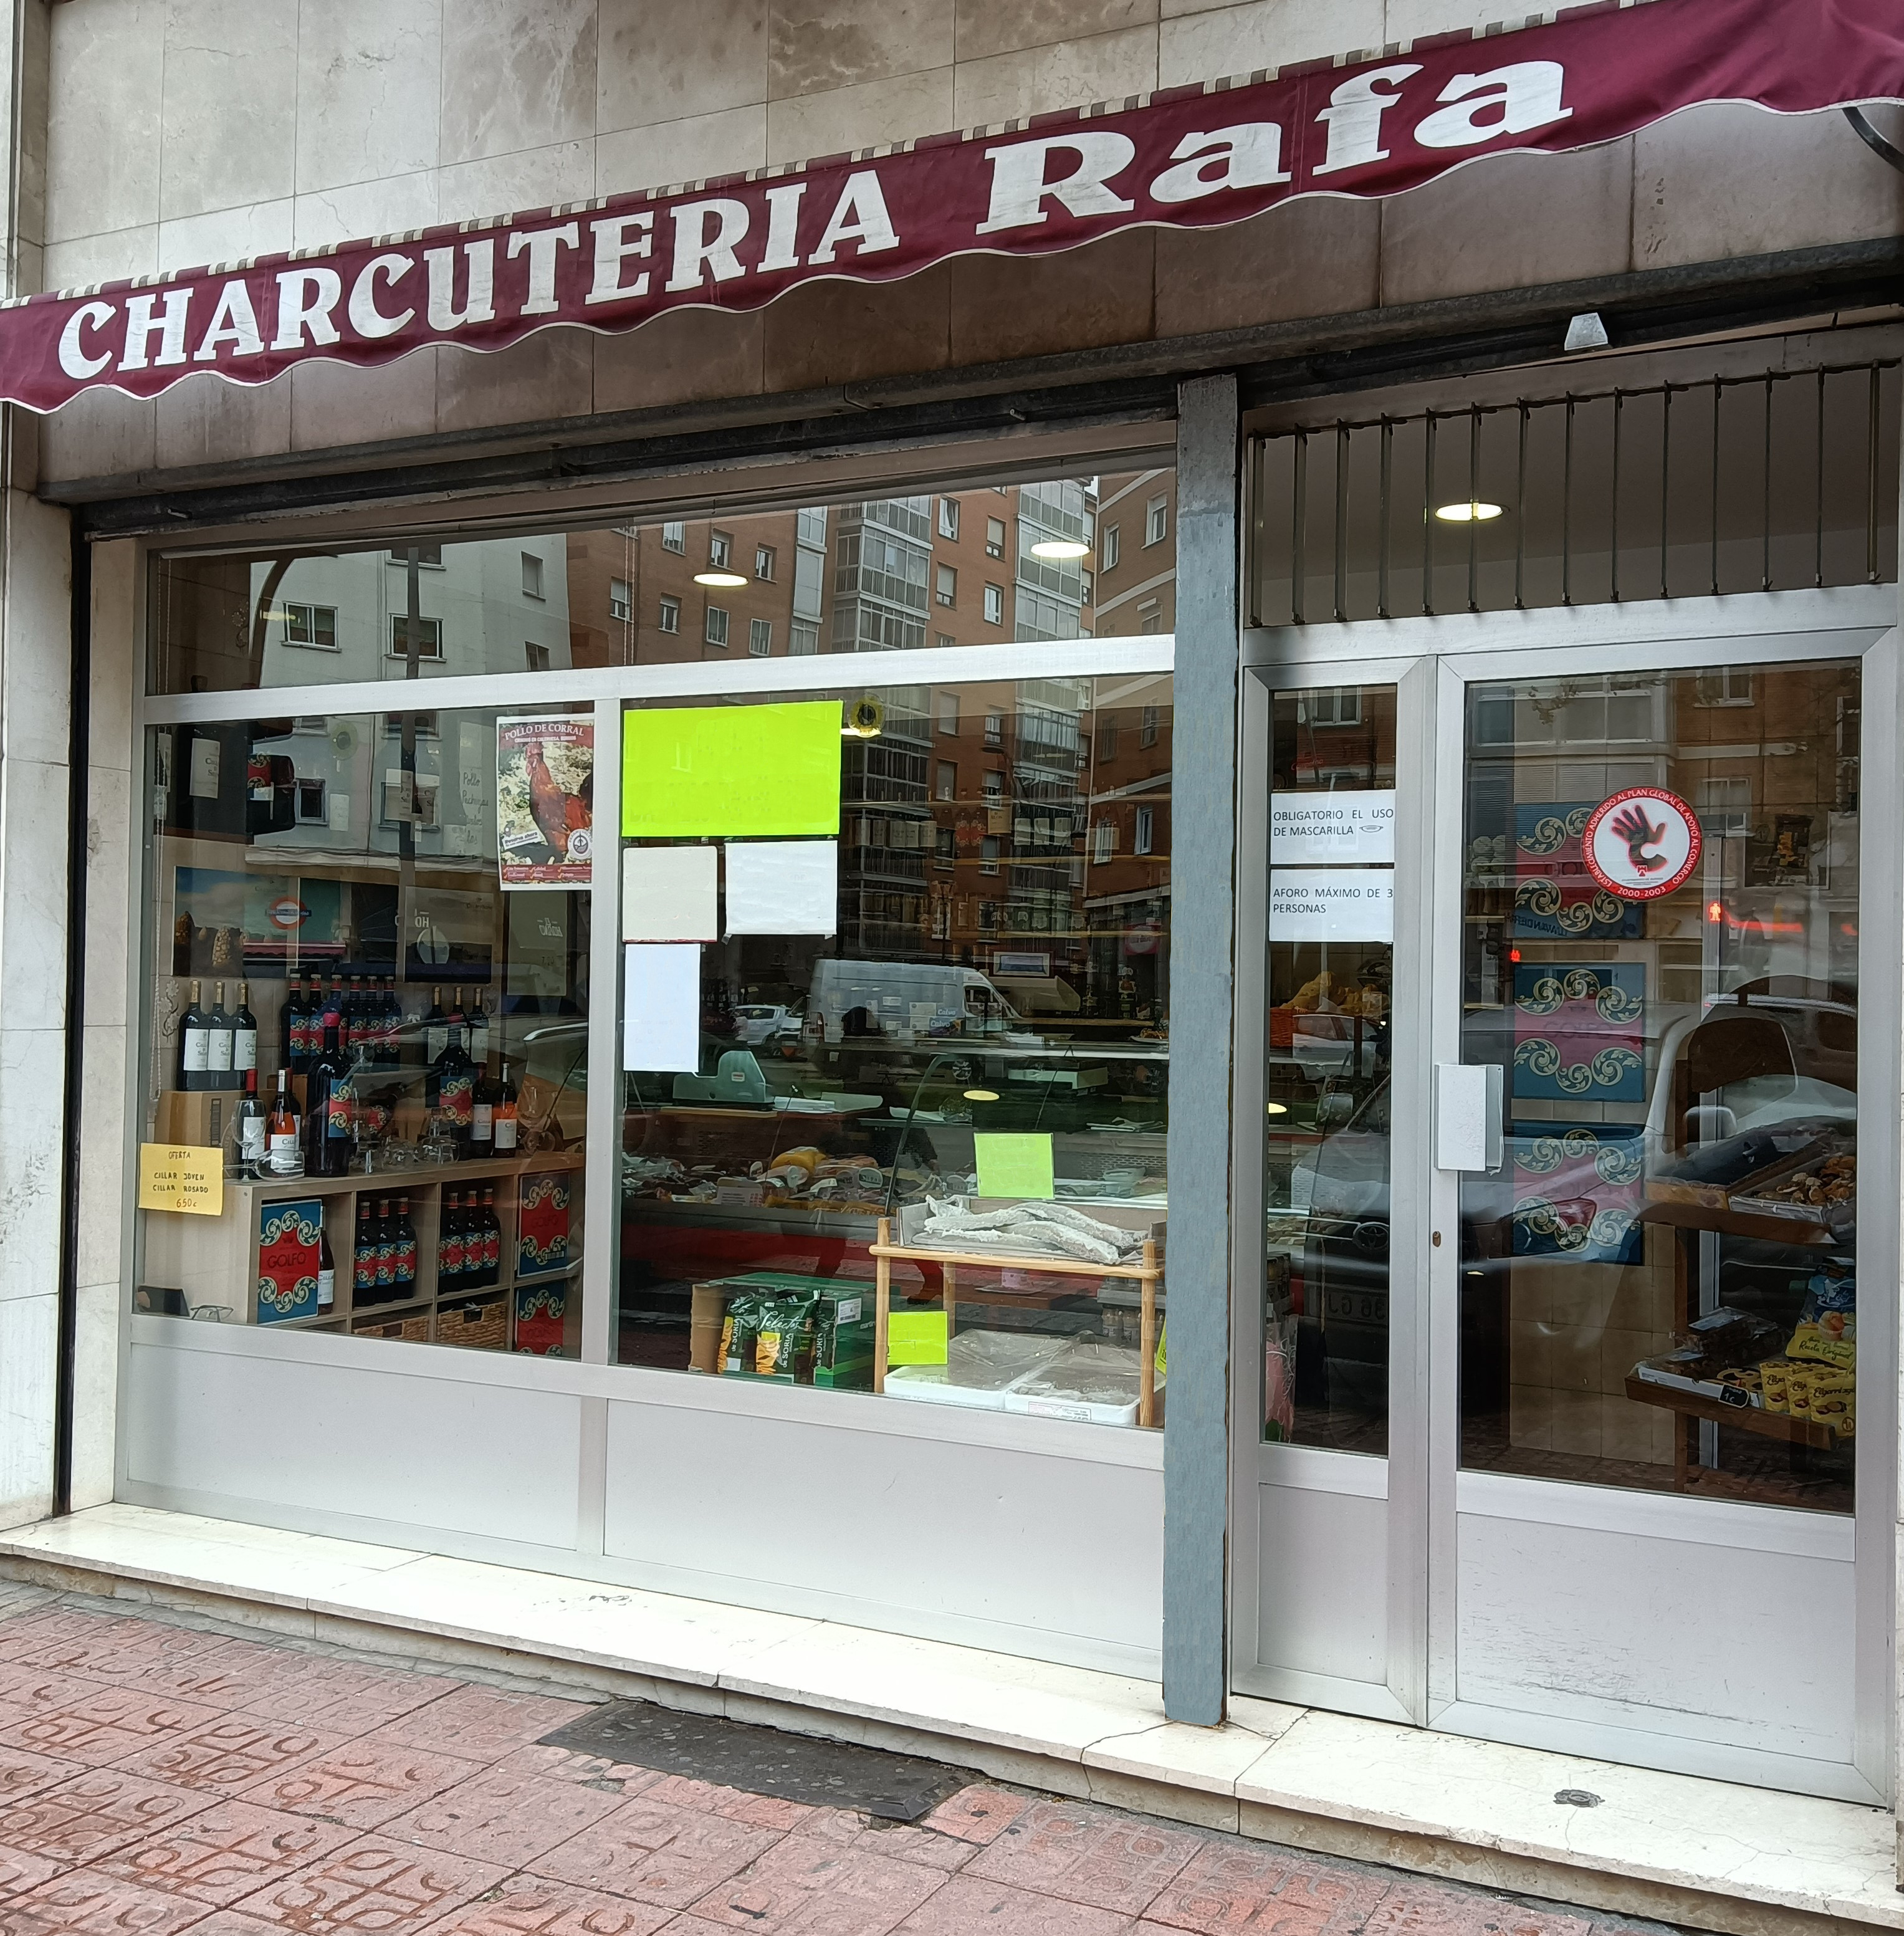 Charcuteria Rafa